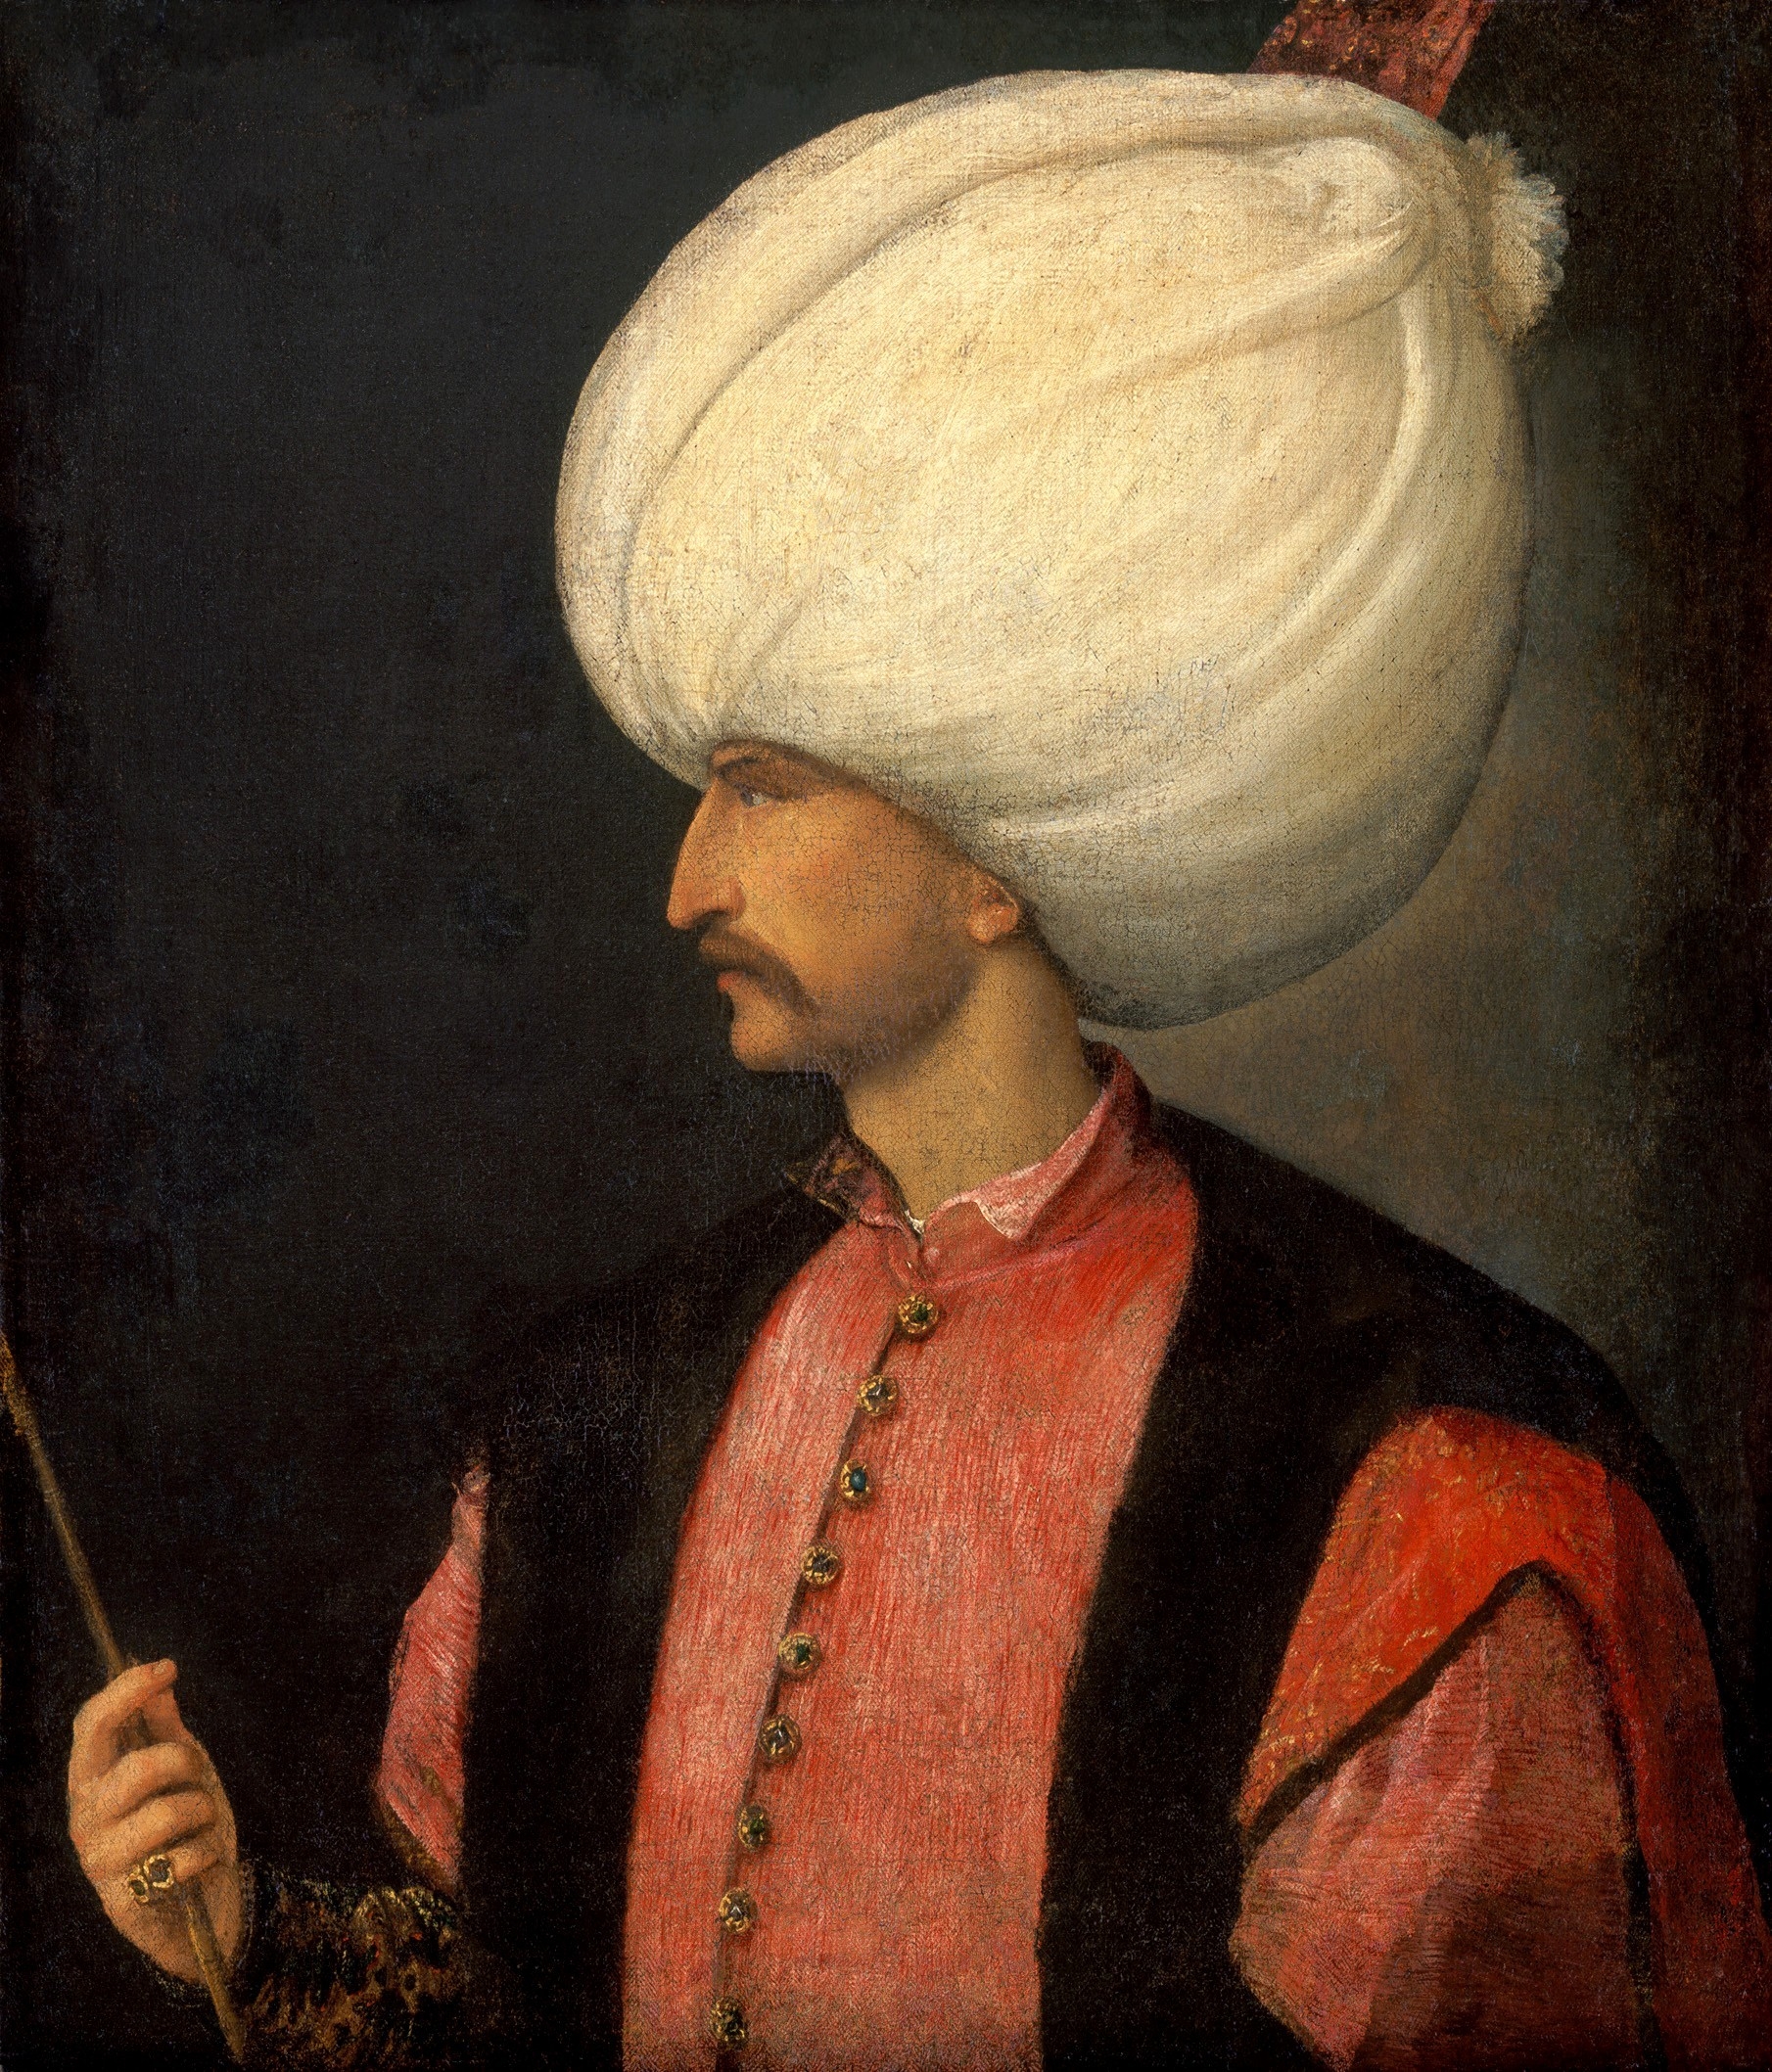 Ottoman Sultan Suleiman